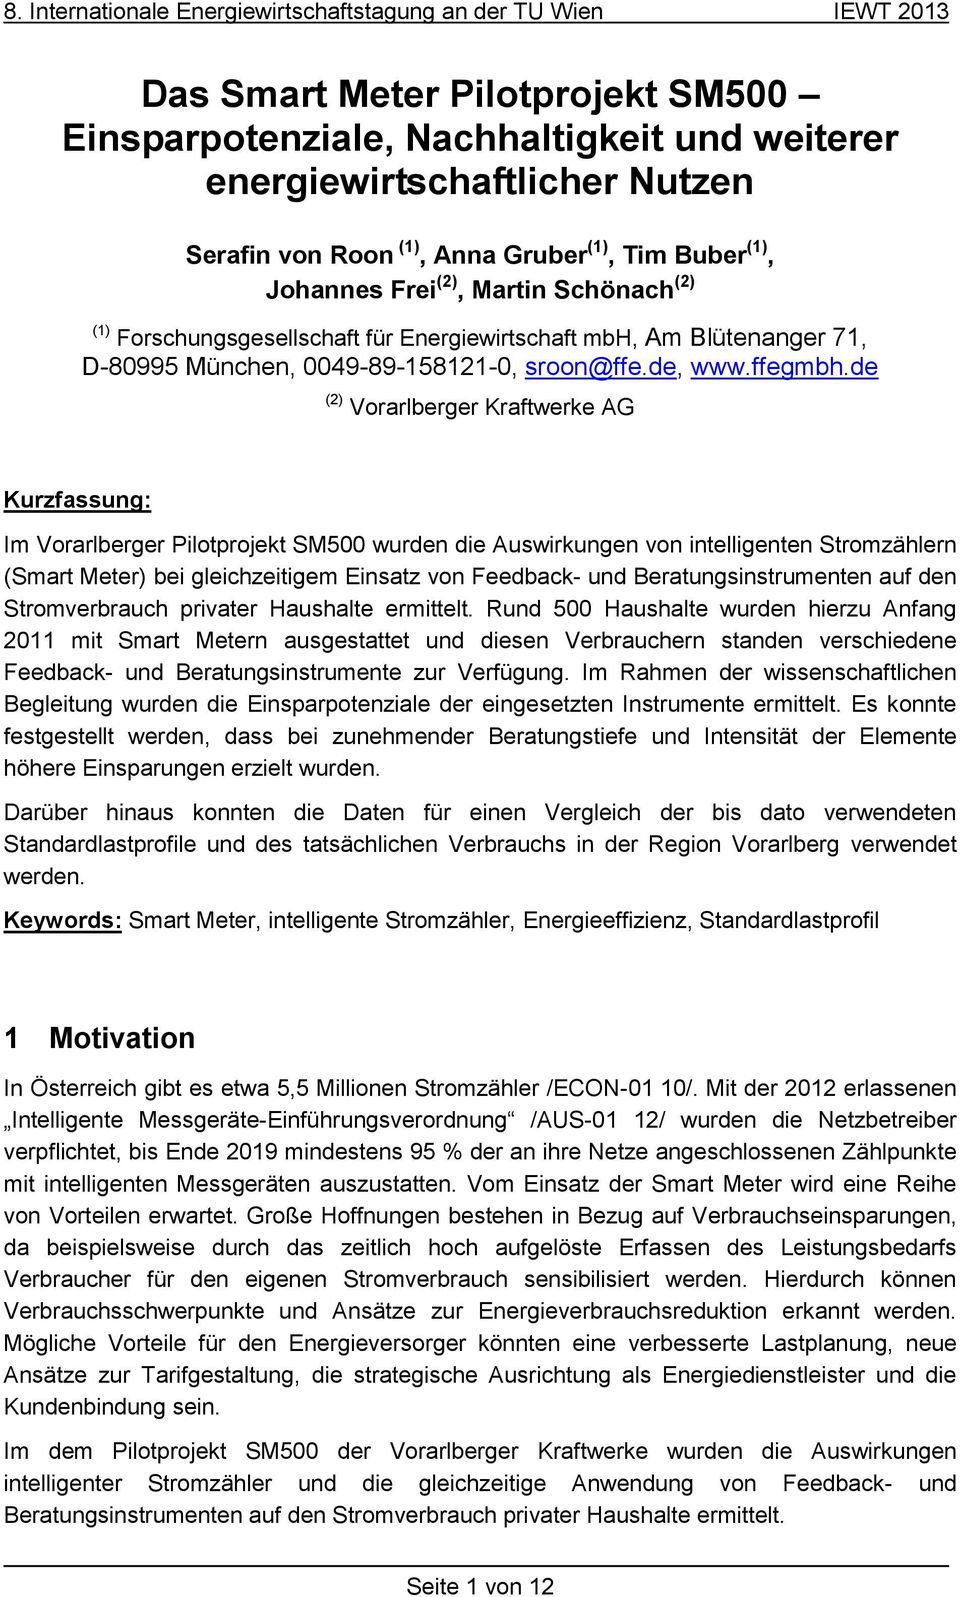 de (2) Vorarlberger Kraftwerke AG Kurzfassung: Im Vorarlberger Pilotprojekt SM500 wurden die Auswirkungen von intelligenten Stromzählern (Smart Meter) bei gleichzeitigem Einsatz von Feedback- und